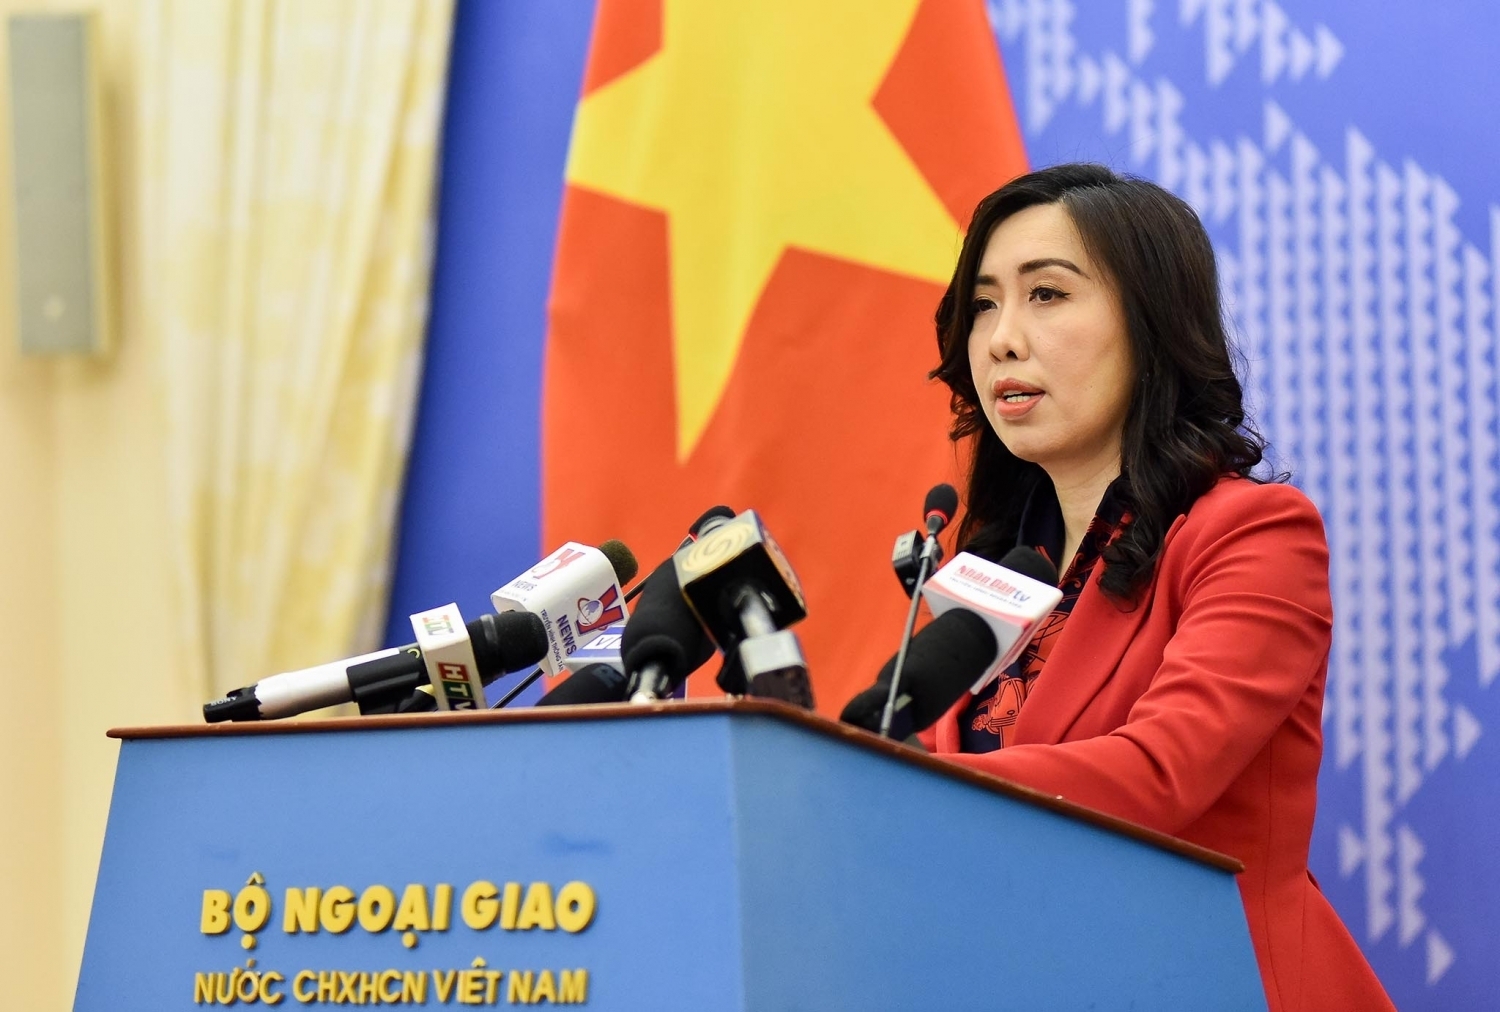 Đề nghị Trung Quốc tôn trọng và không vi phạm vùng đặc quyền kinh tế, thềm lục địa của Việt Nam